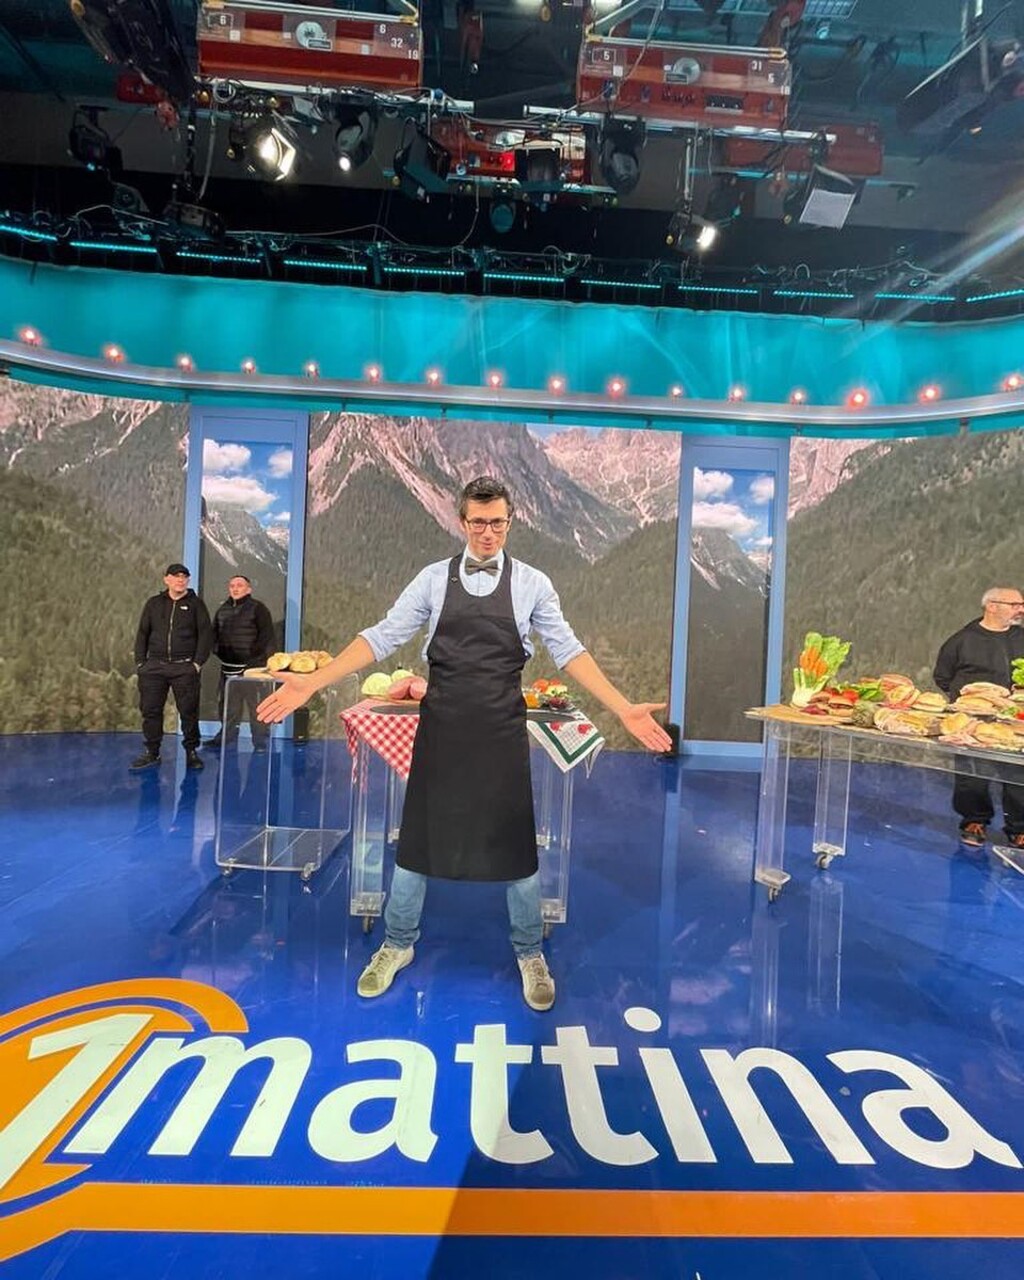 고급 샌드위치: RAI TV 프로그램 “1Mattina”의 셰프 겸 셰프가 아닌 Daniele Reponi 게스트